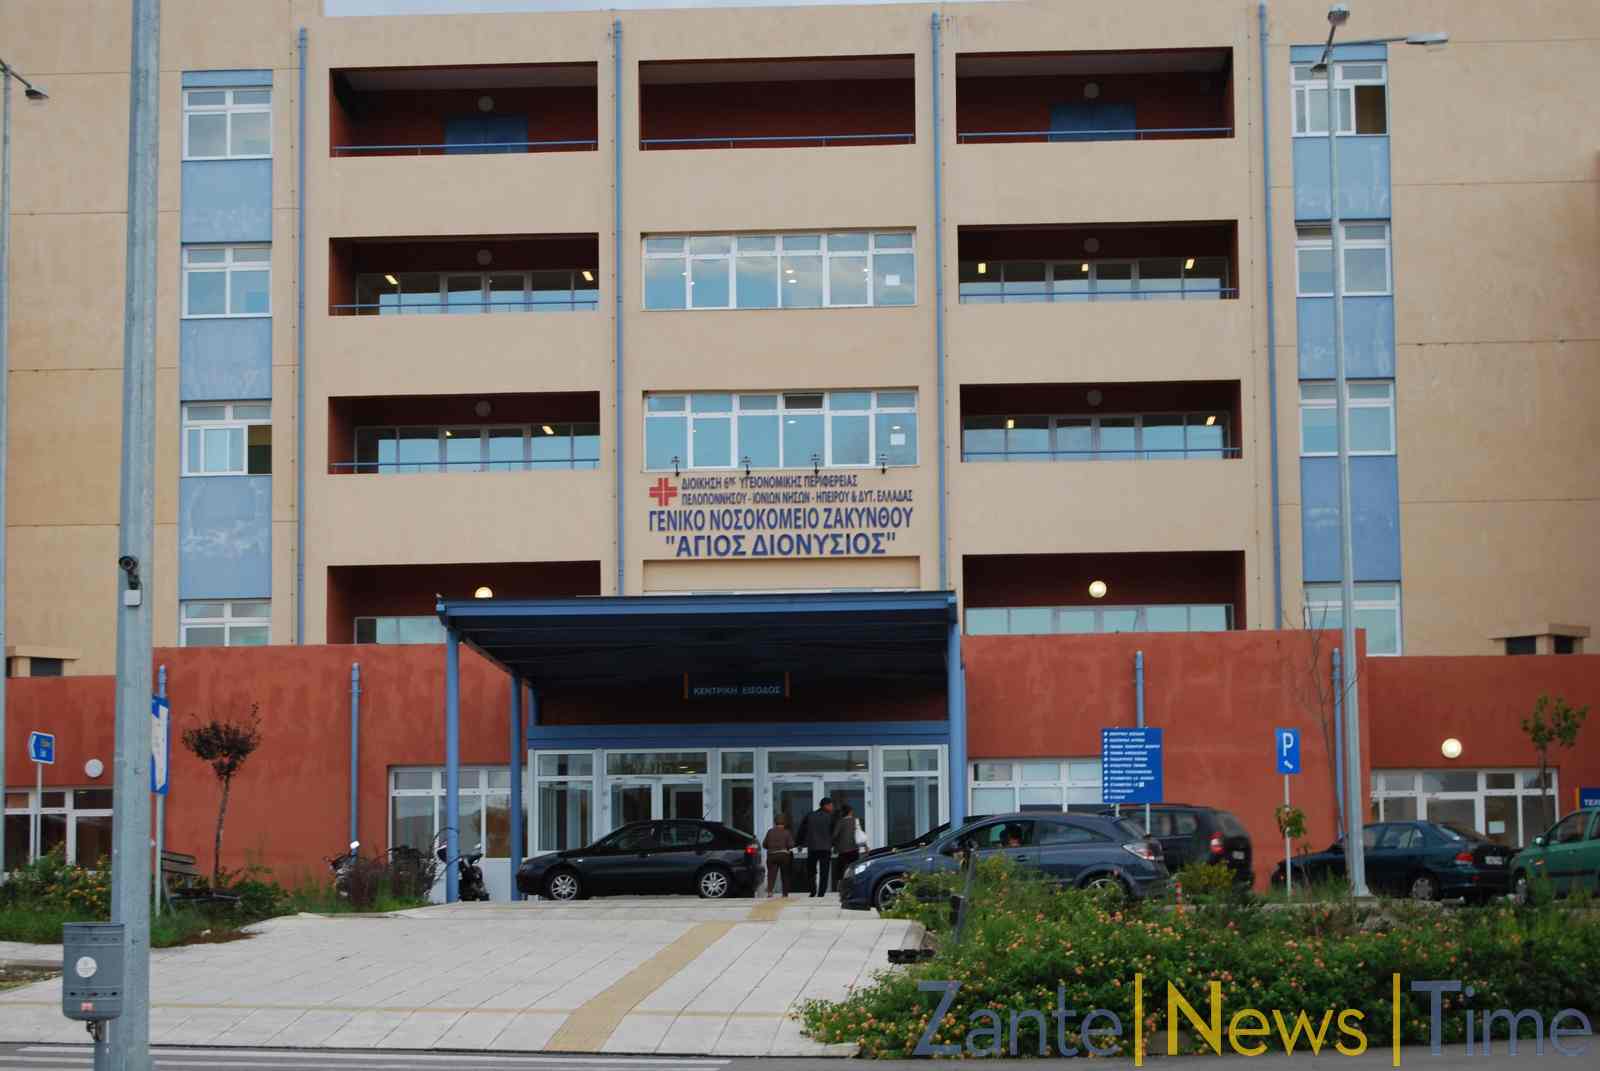 Ένωση Νοσοκομειακών Ιατρών Ζακύνθου: Καταγγέλλουμε την διοίκηση για τις ελλιπείς εφημερίες